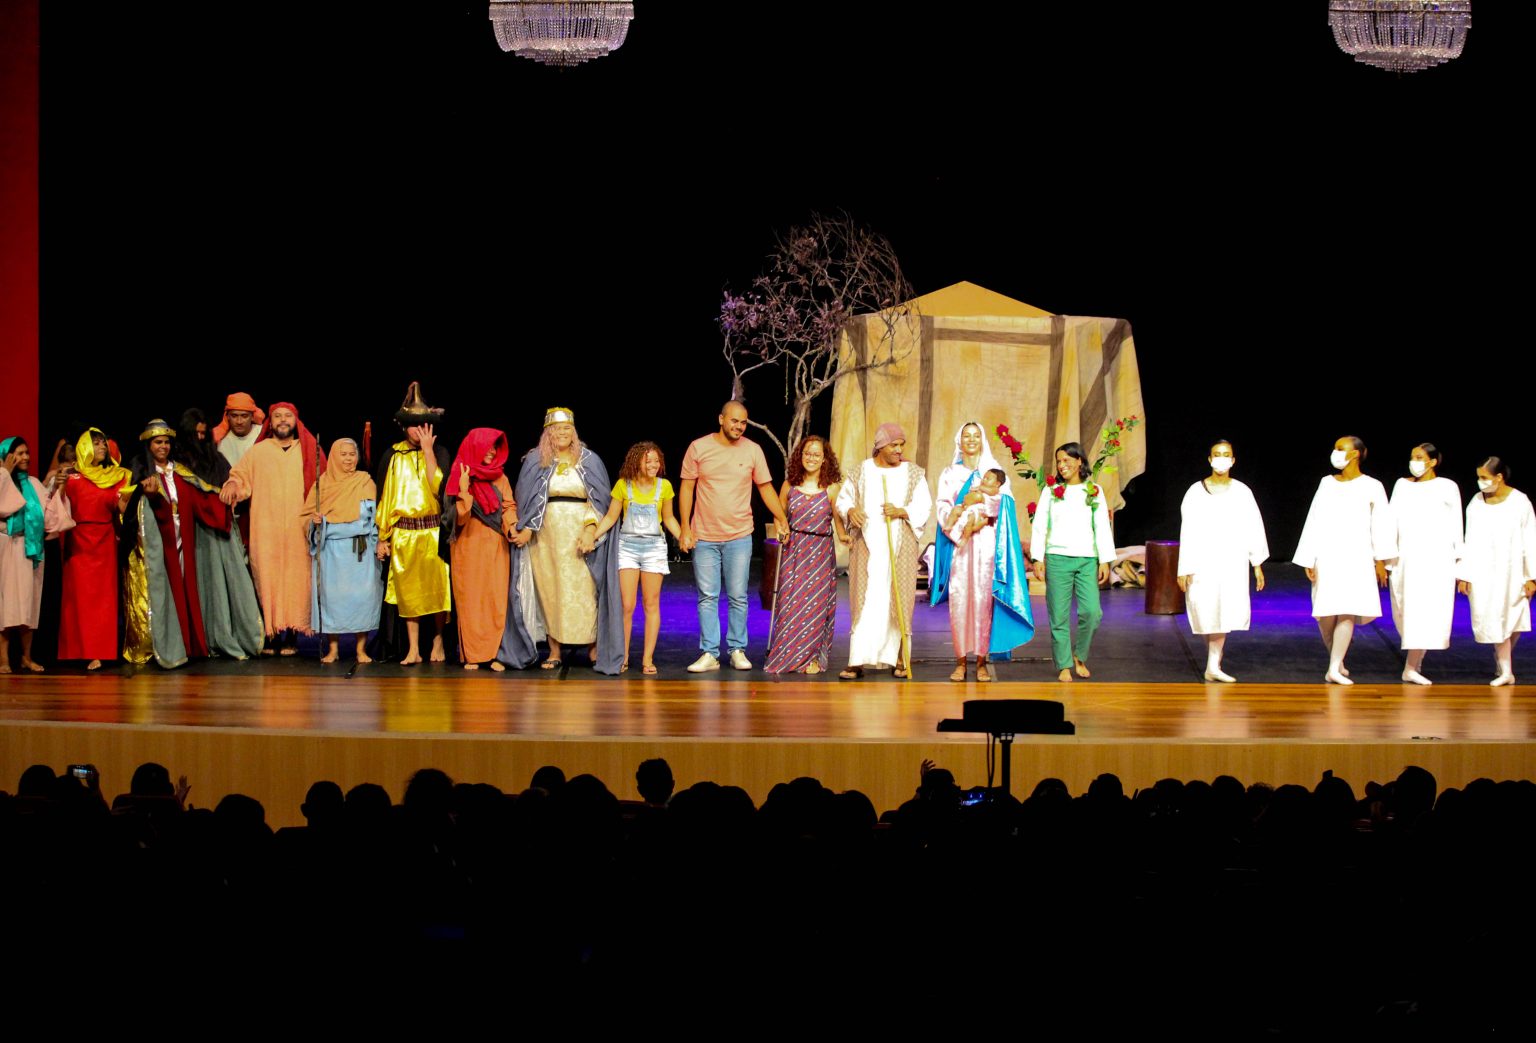 Espetáculo “A Menina e a Roseira: O Nascimento de Jesus” acontece neste fim de semana, no Teatro Palácio das Artes